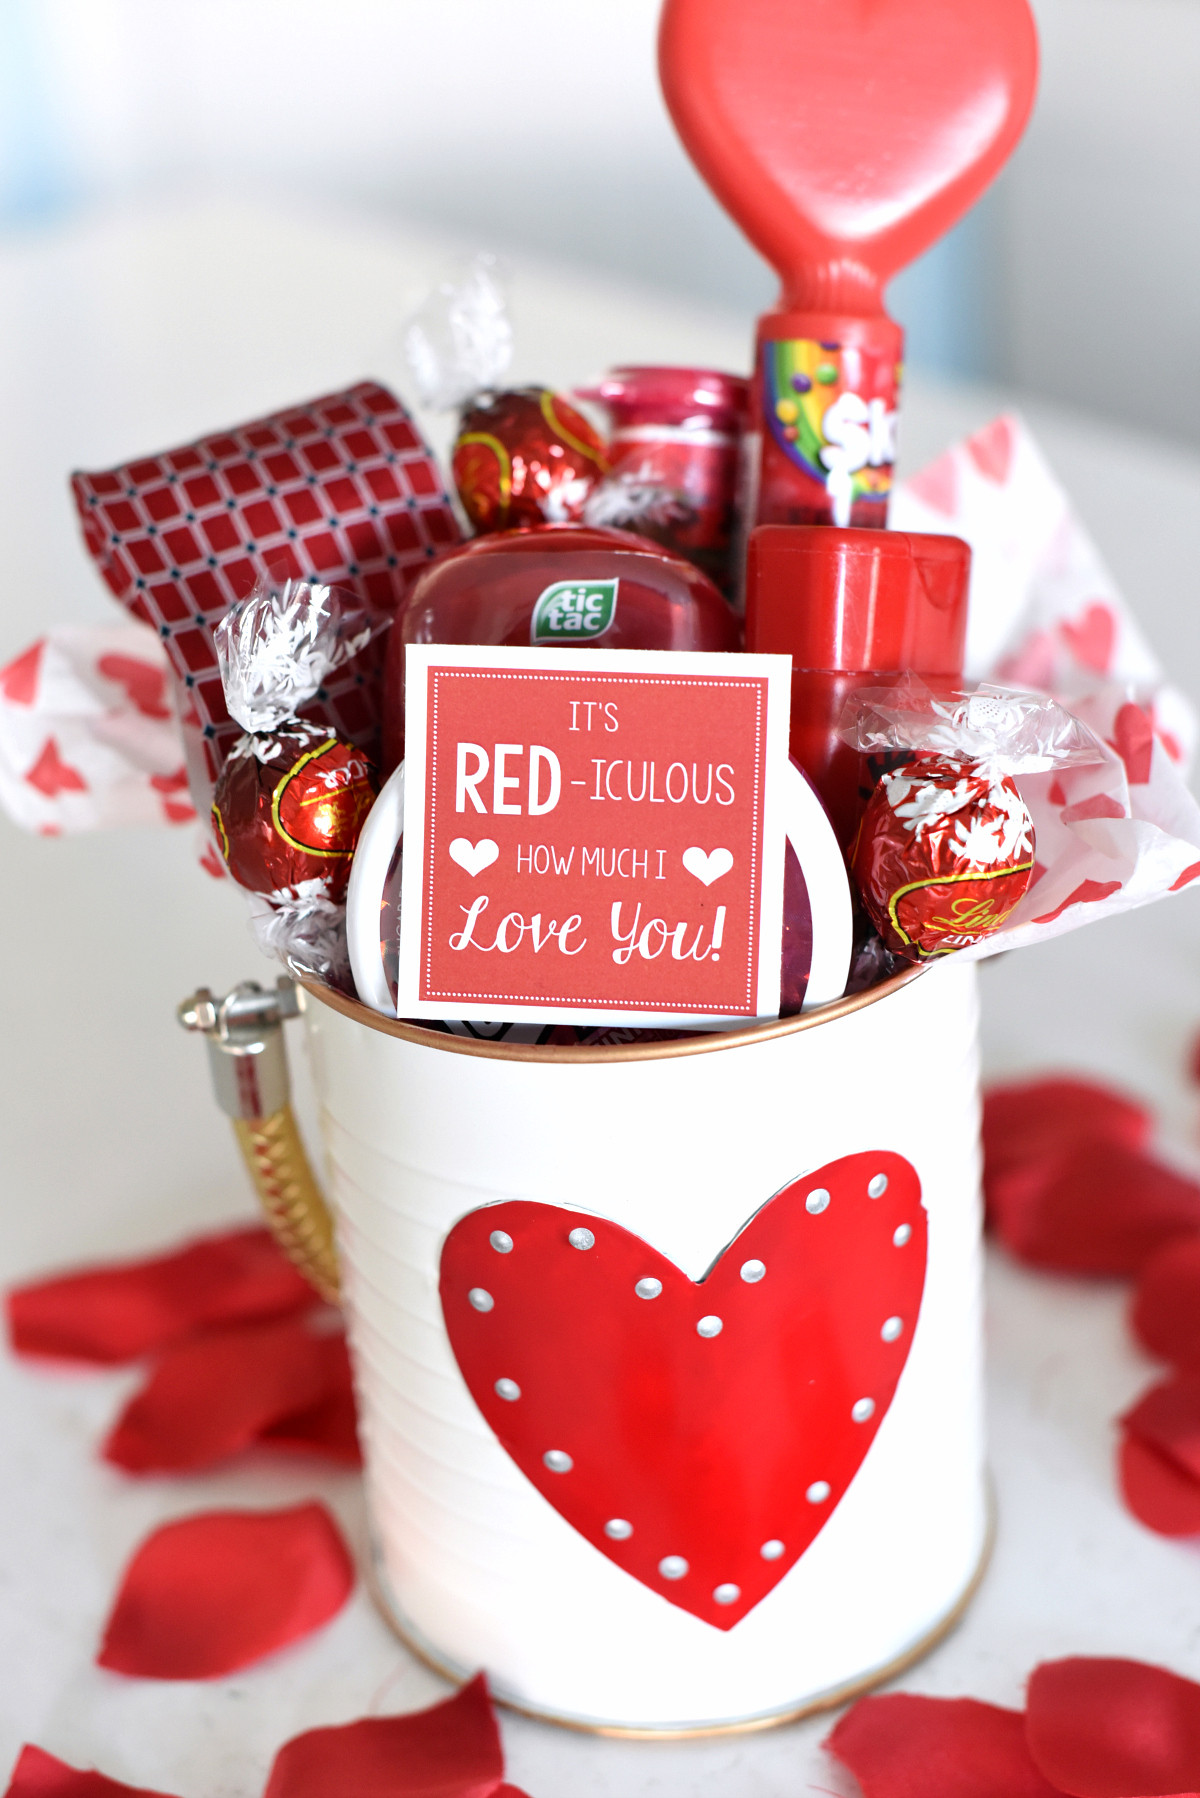 Free Valentine Gift Ideas
 25 DIY Valentine s Day Gift Ideas Teens Will Love